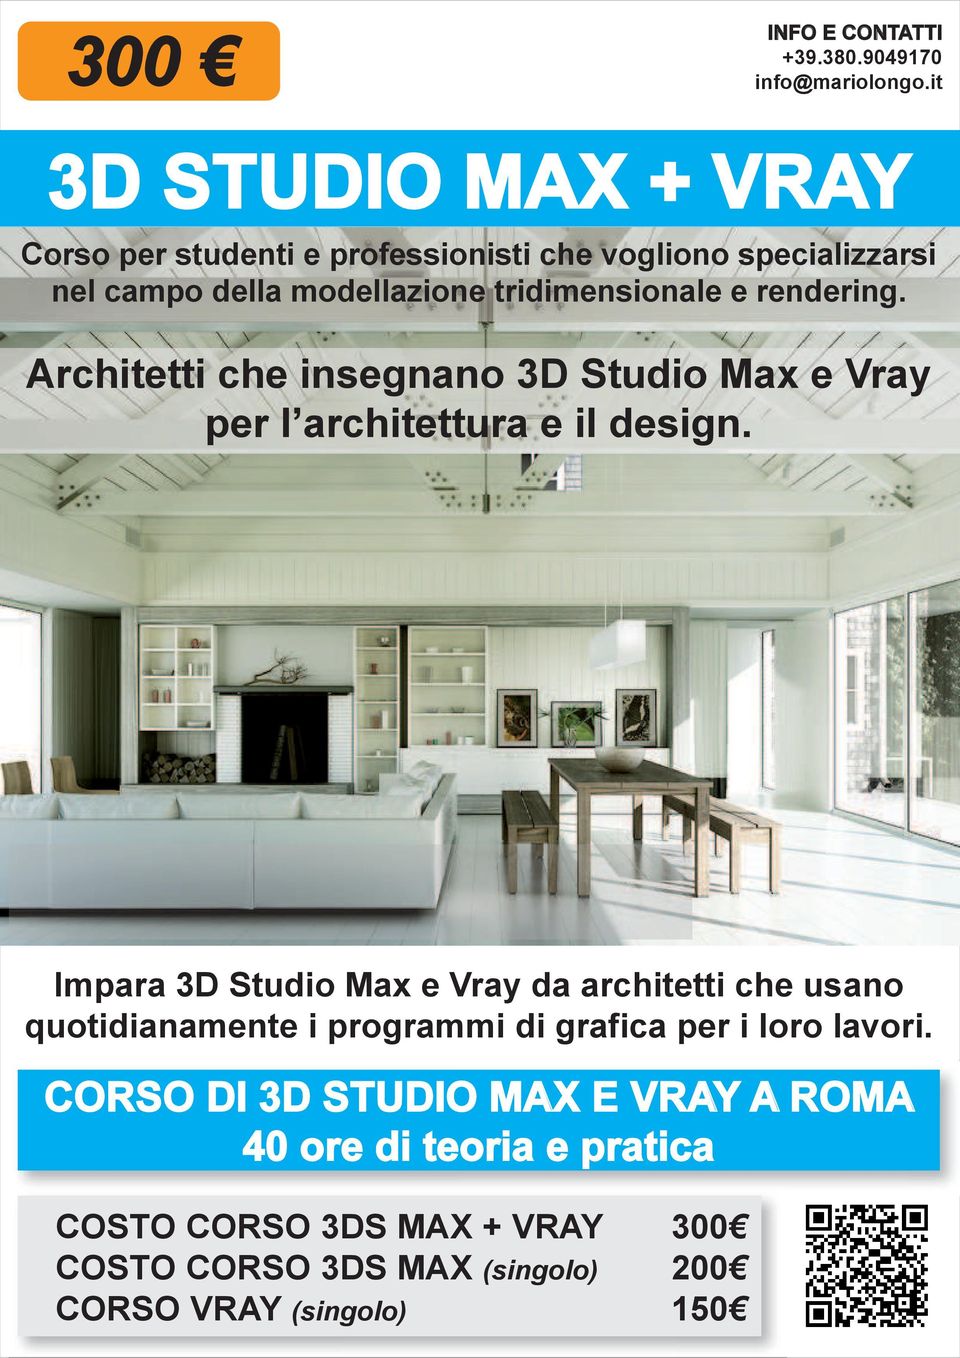 tridimensionale e rendering. Architetti che insegnano 3D Studio Max e Vray per l architettura e il design.